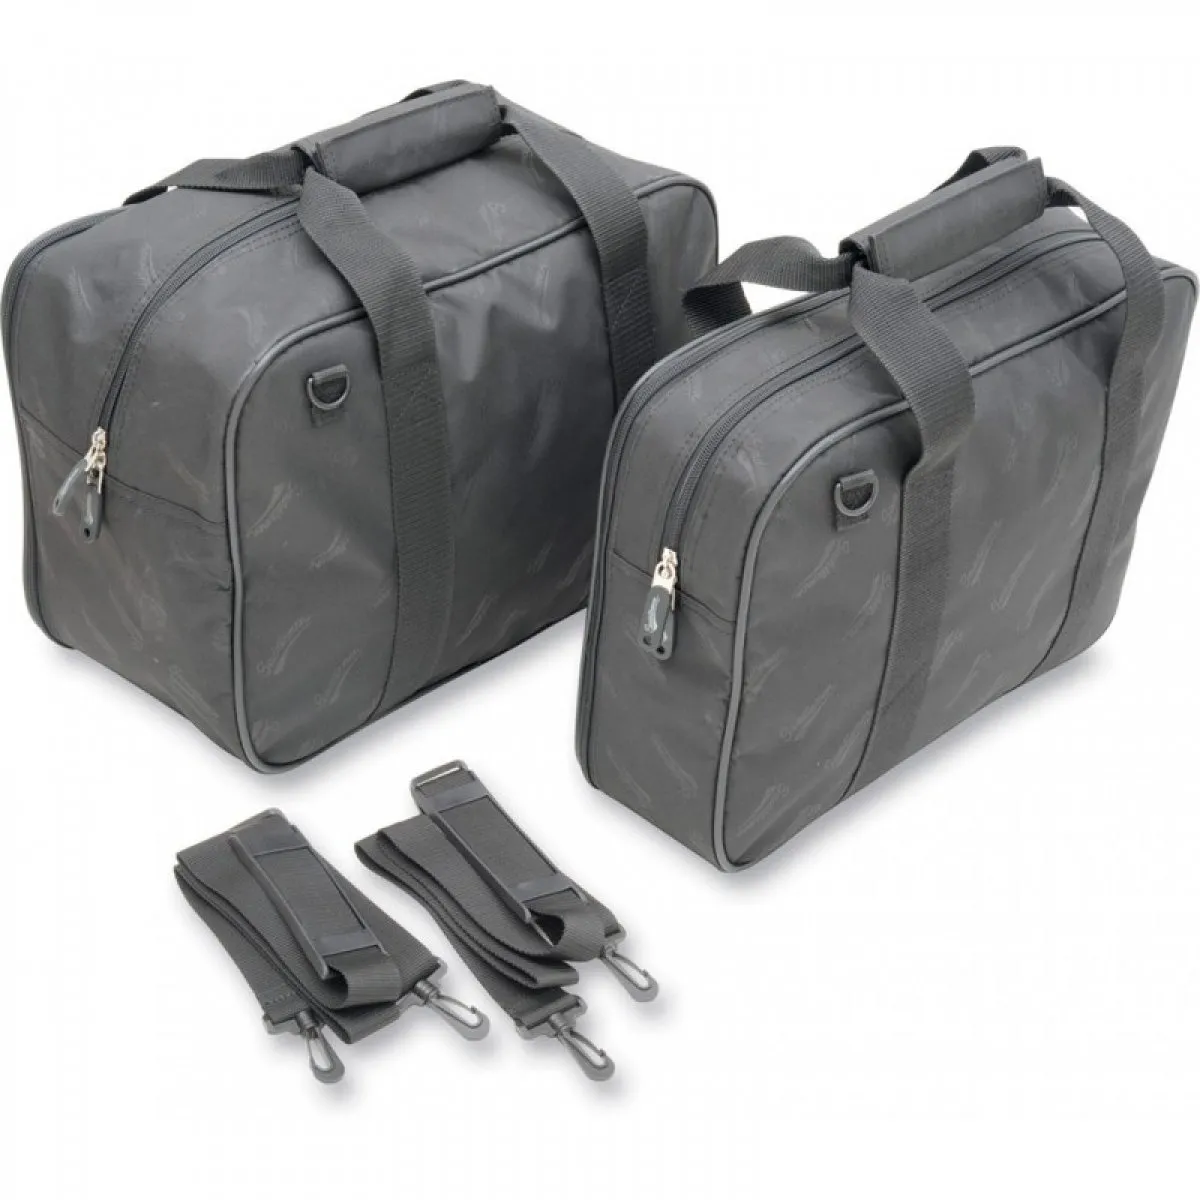 Saddlemen Innen-Taschen + Organizer-Taschen für Vario-Koffer BMW R1200GS